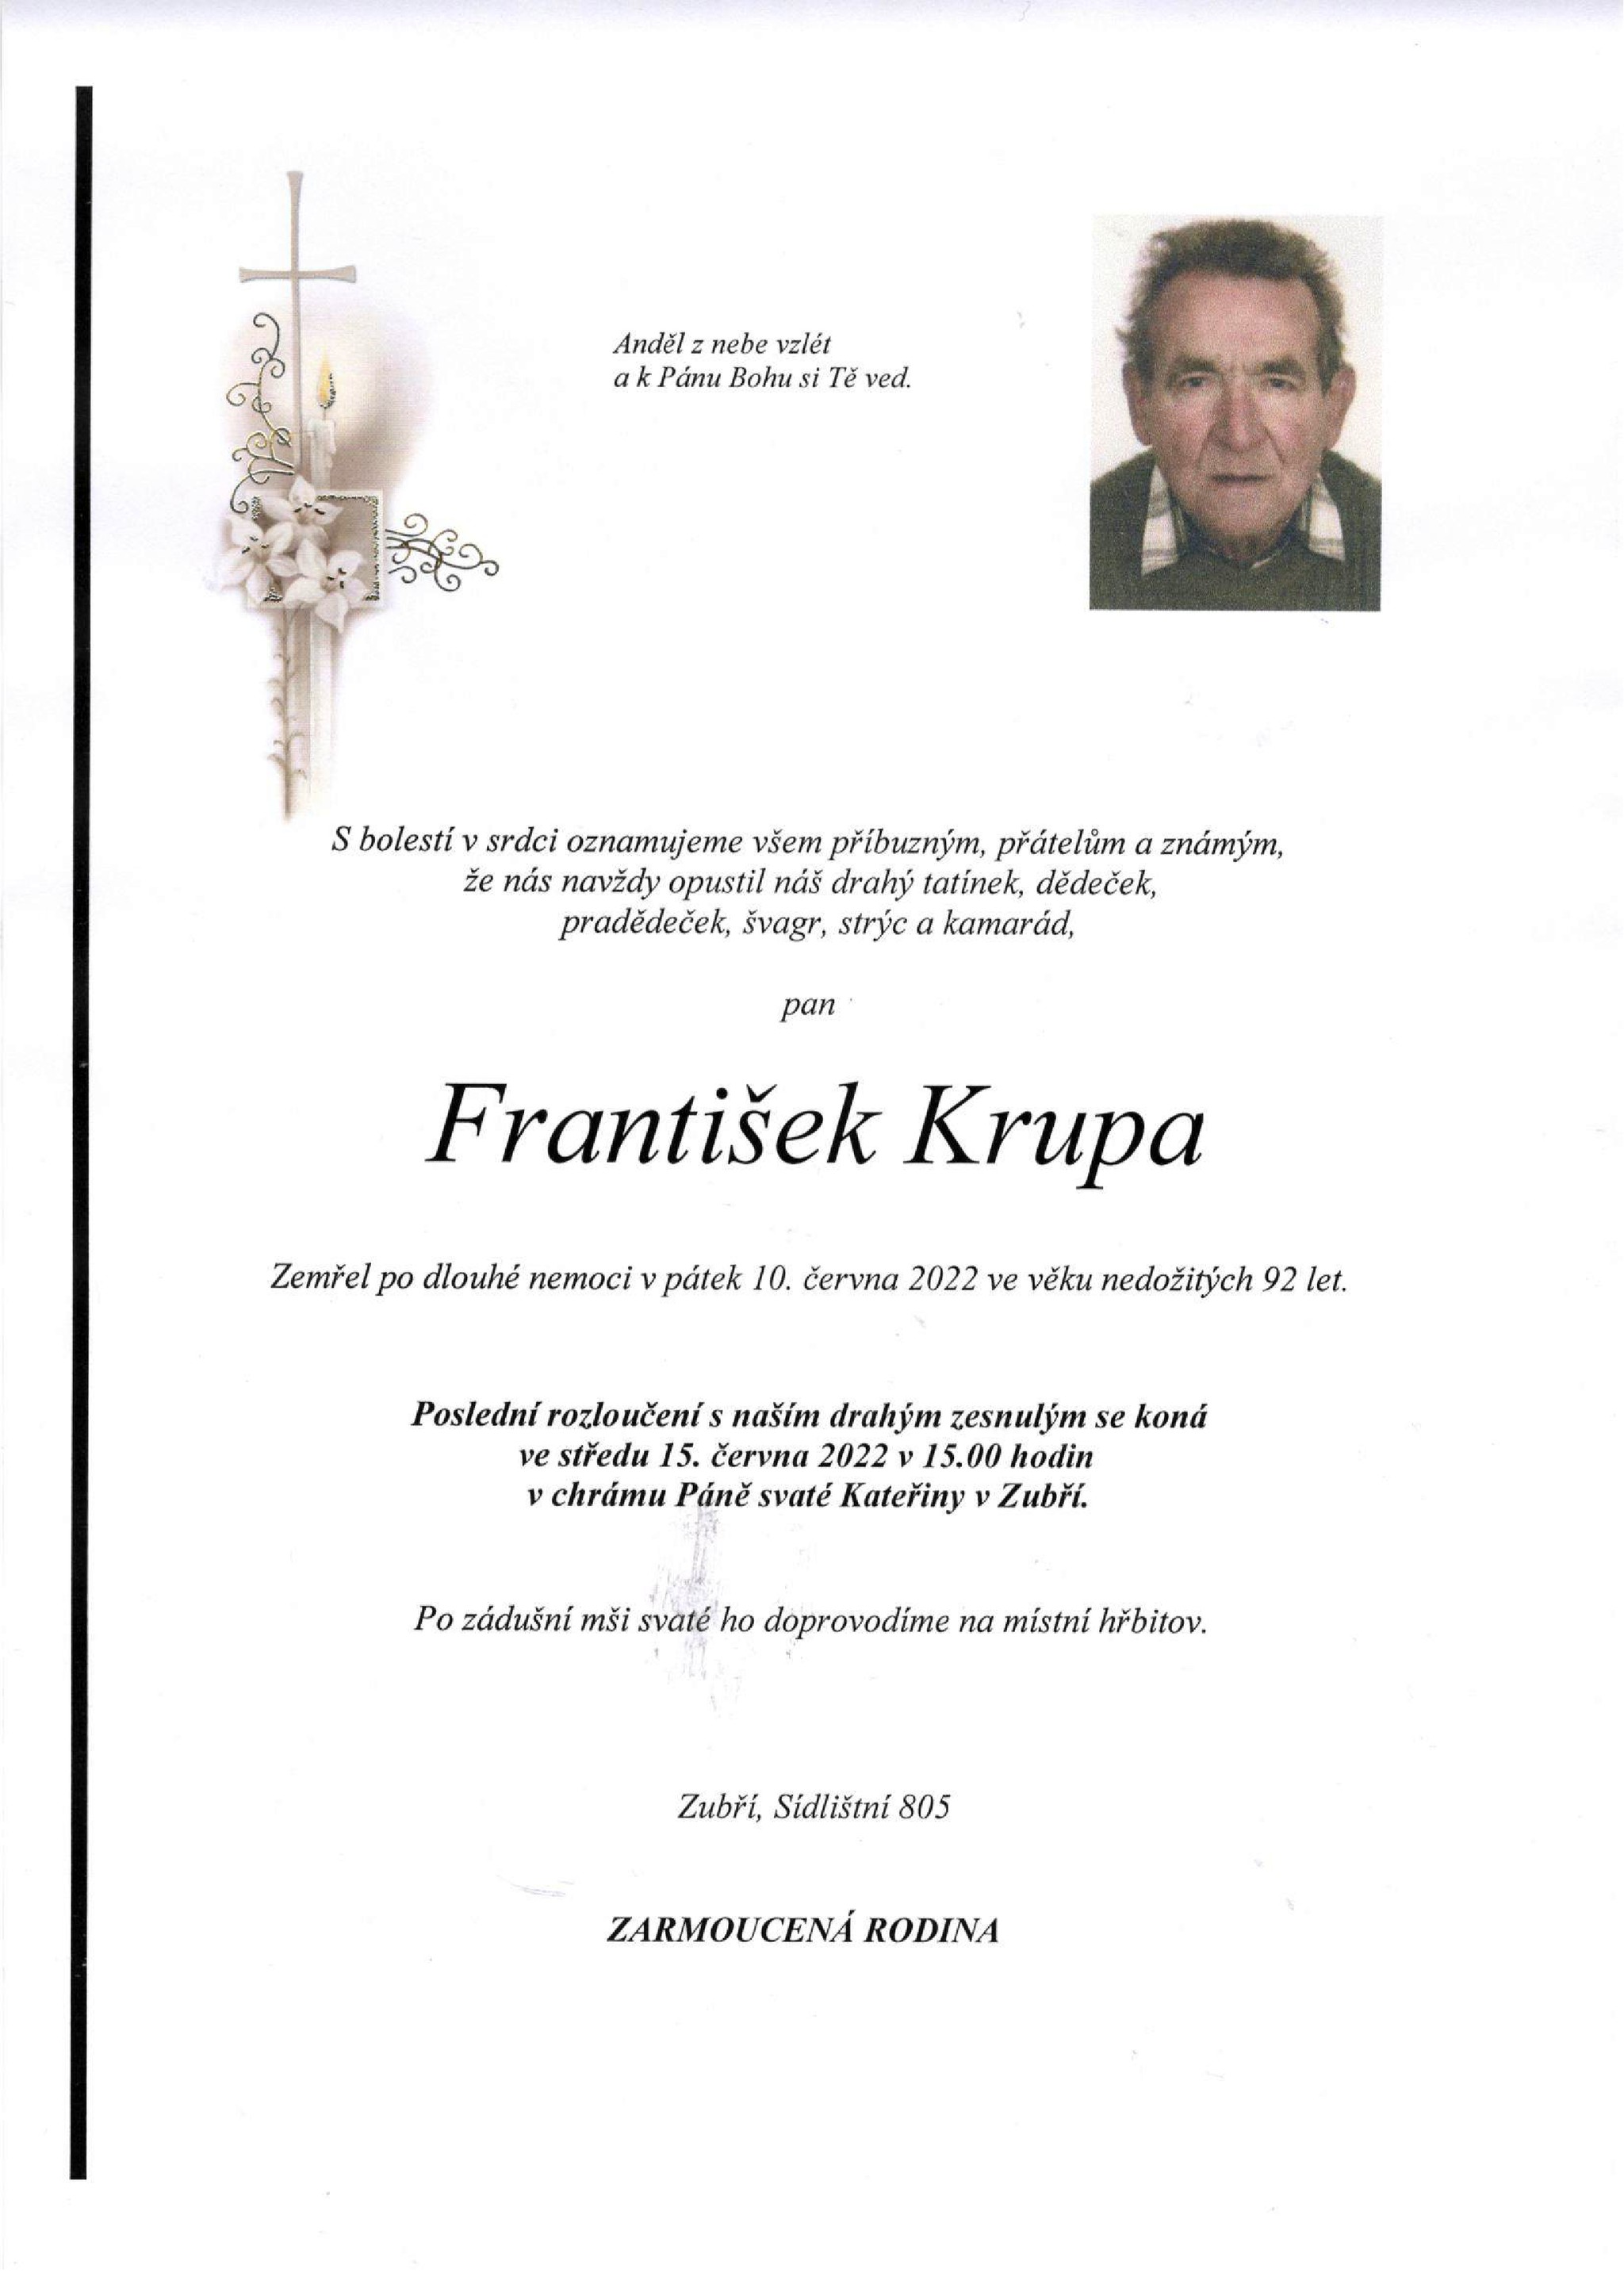 František Krupa